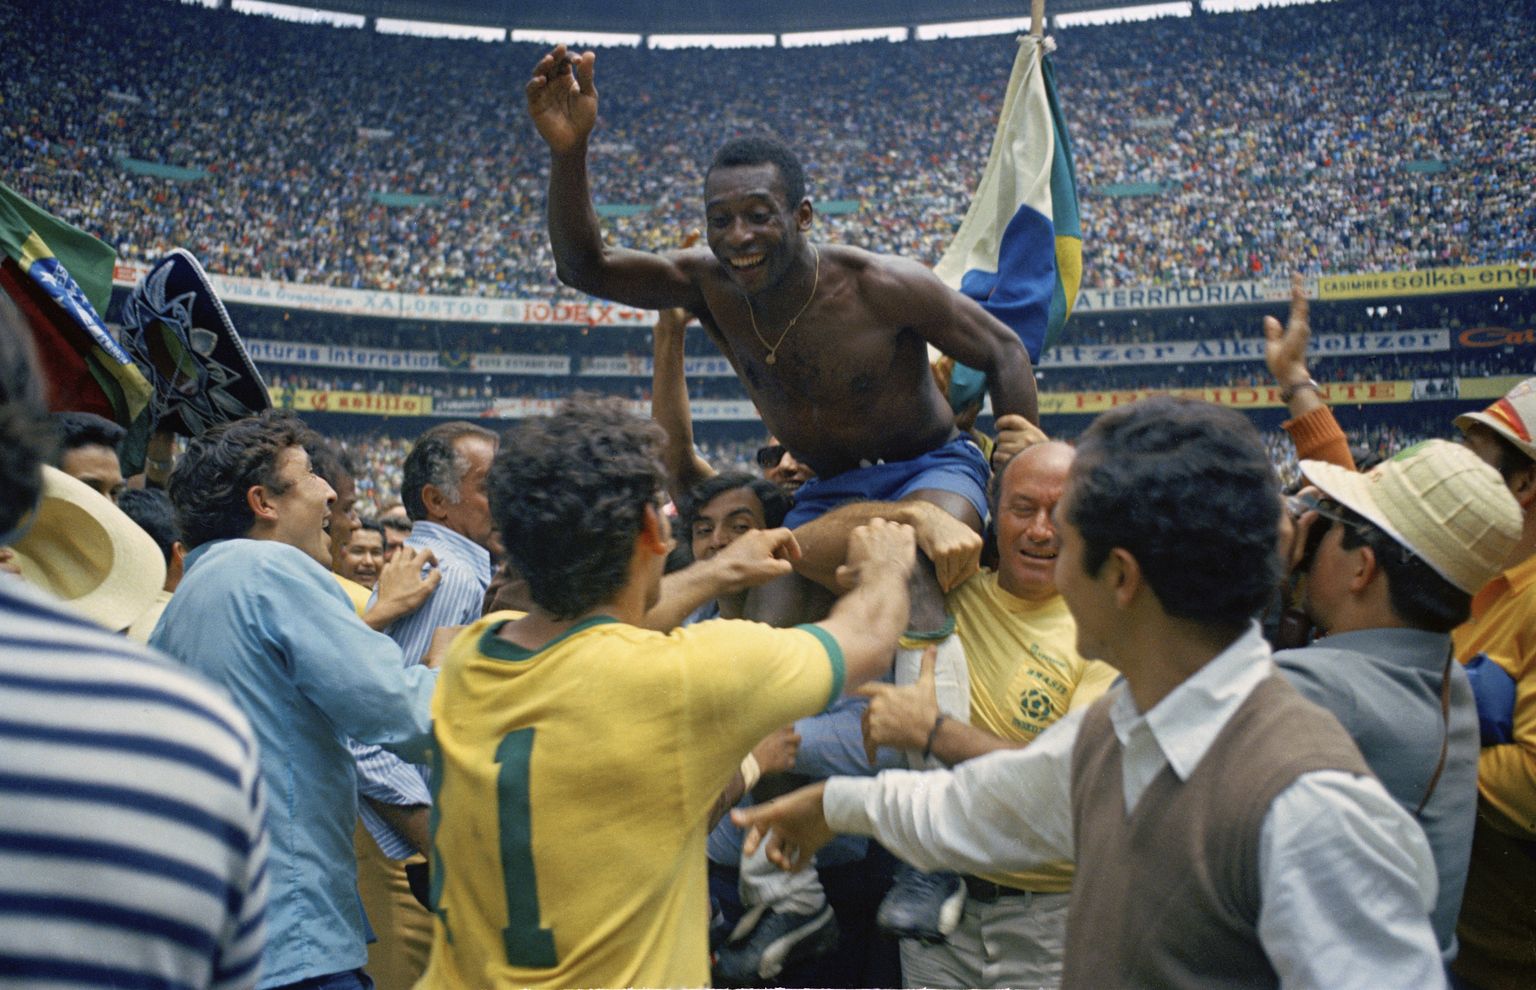 Jalgpallikuningaks tõusnud Pelé'd kanti finaali järel kätel. Lisaks neljale väravale sai ta 1970. aasta turniiril kirja lausa kuus väravasöötu, mis on siiani rekord.